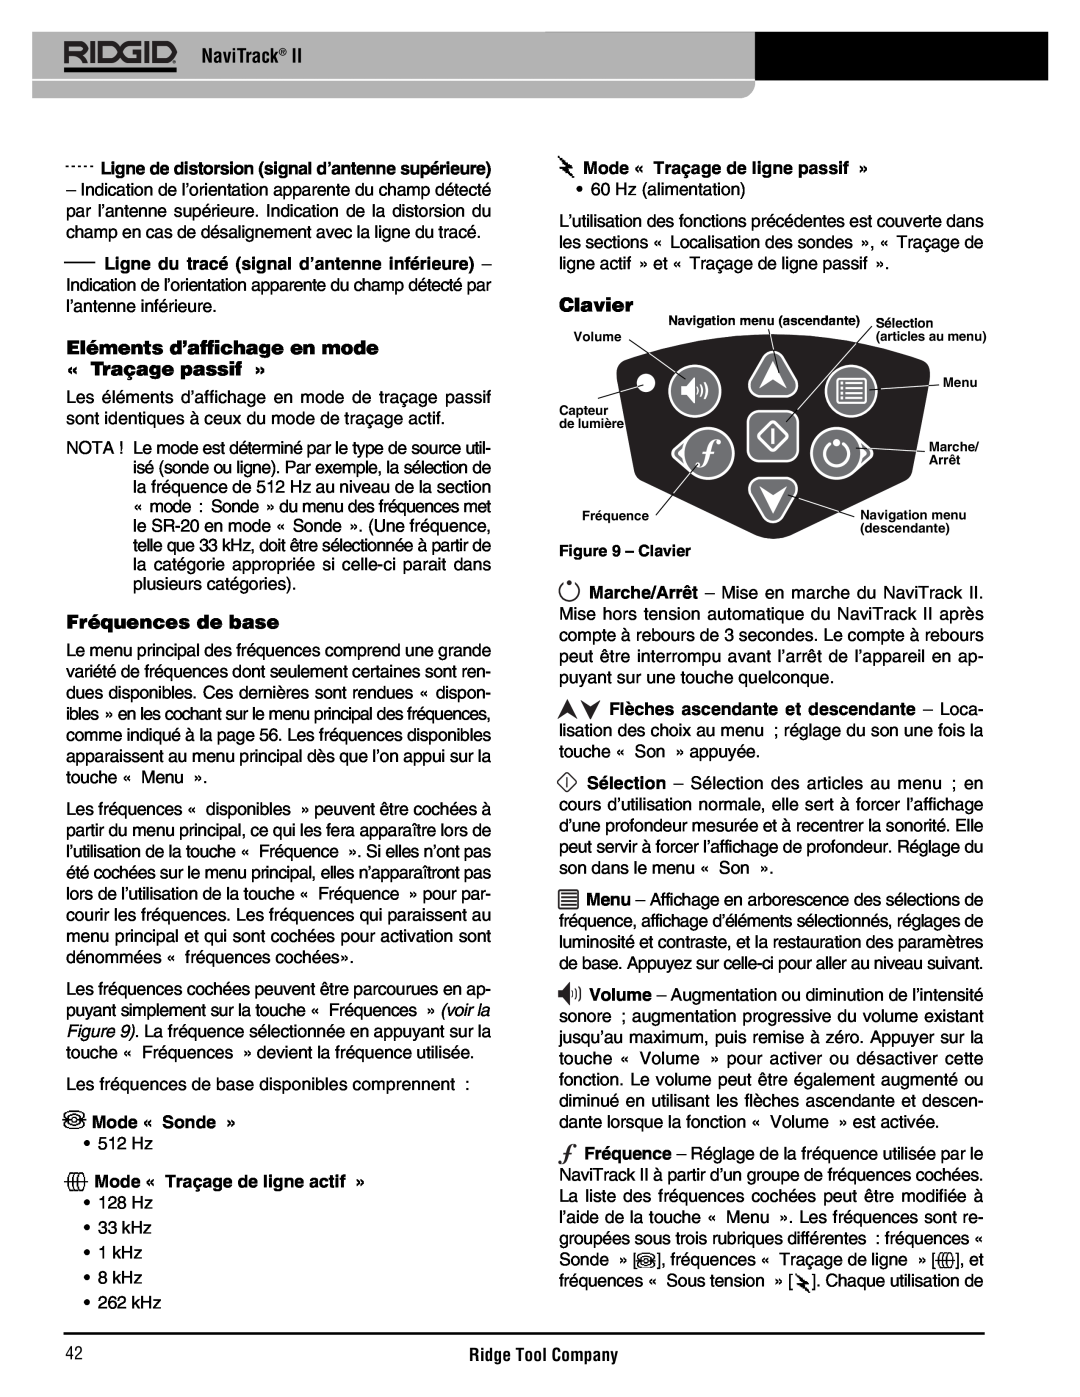 RIDGID Metal Detector manual Eléments d’affichage en mode « Traçage passif », Fréquences de base, Clavier, Mode « Sonde » 